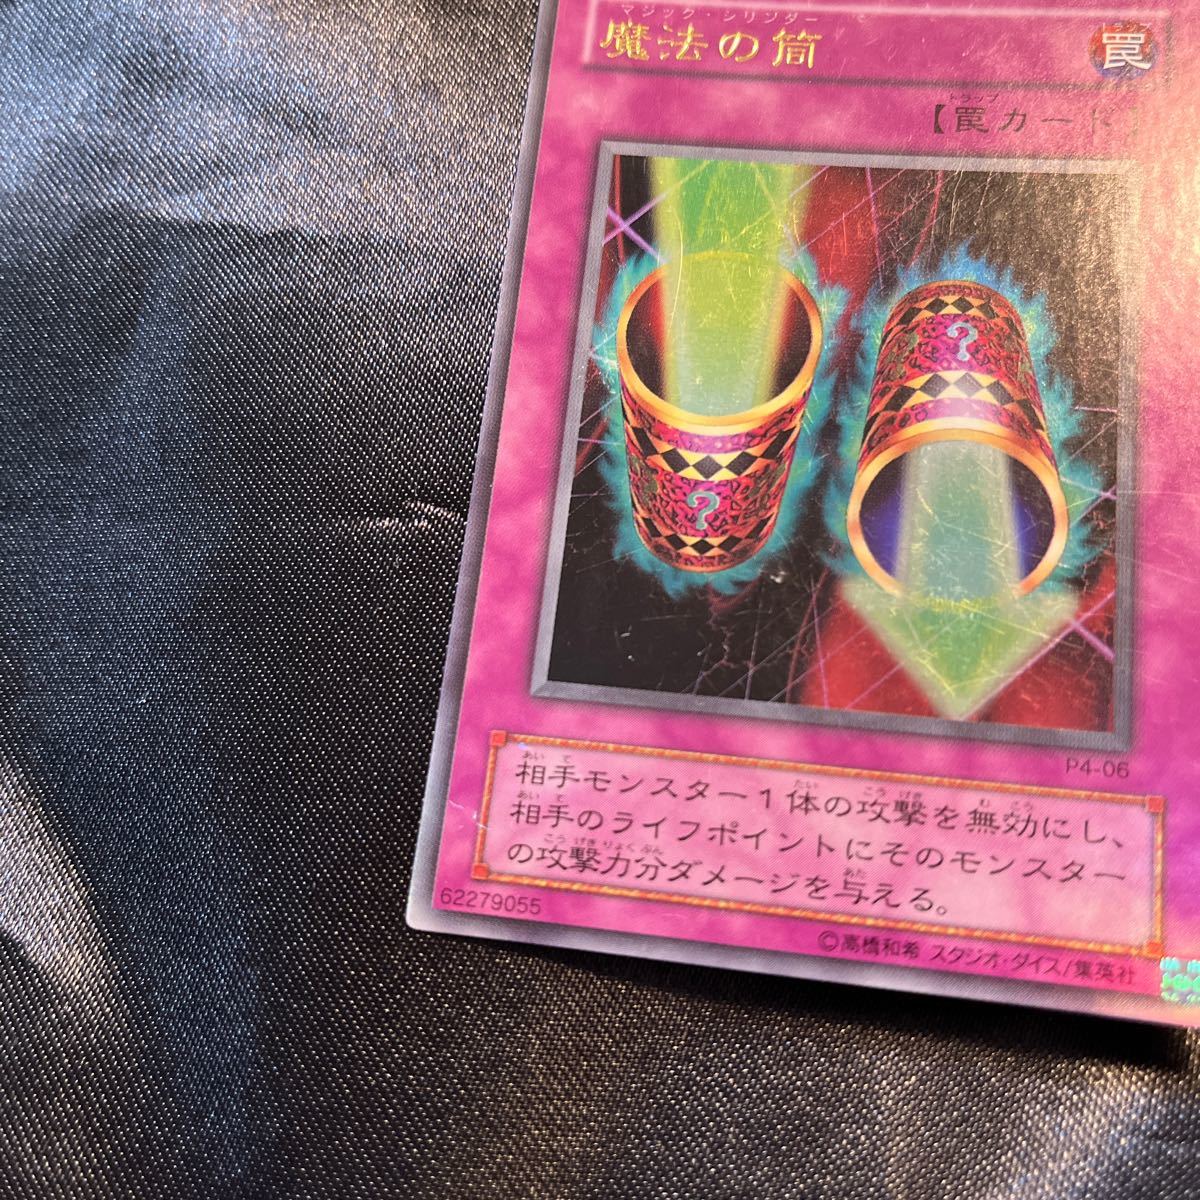 遊戯王カード 2枚 魔法の筒 マジック・シリンダー ウルトラレア P4-06_画像4